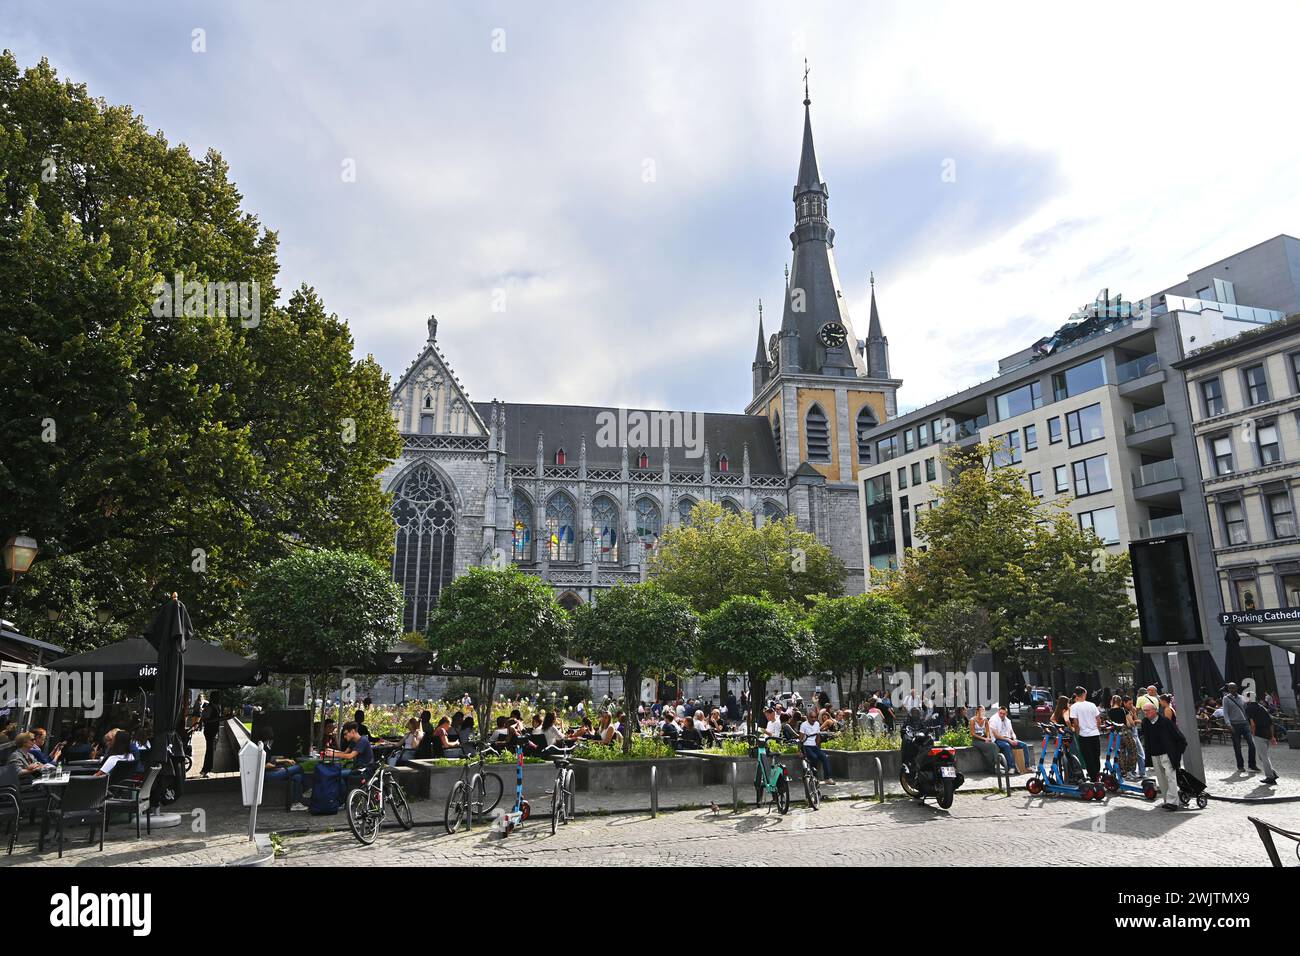 Saint-Paul's cathedral and Place de la Cathédrale Stock Photo